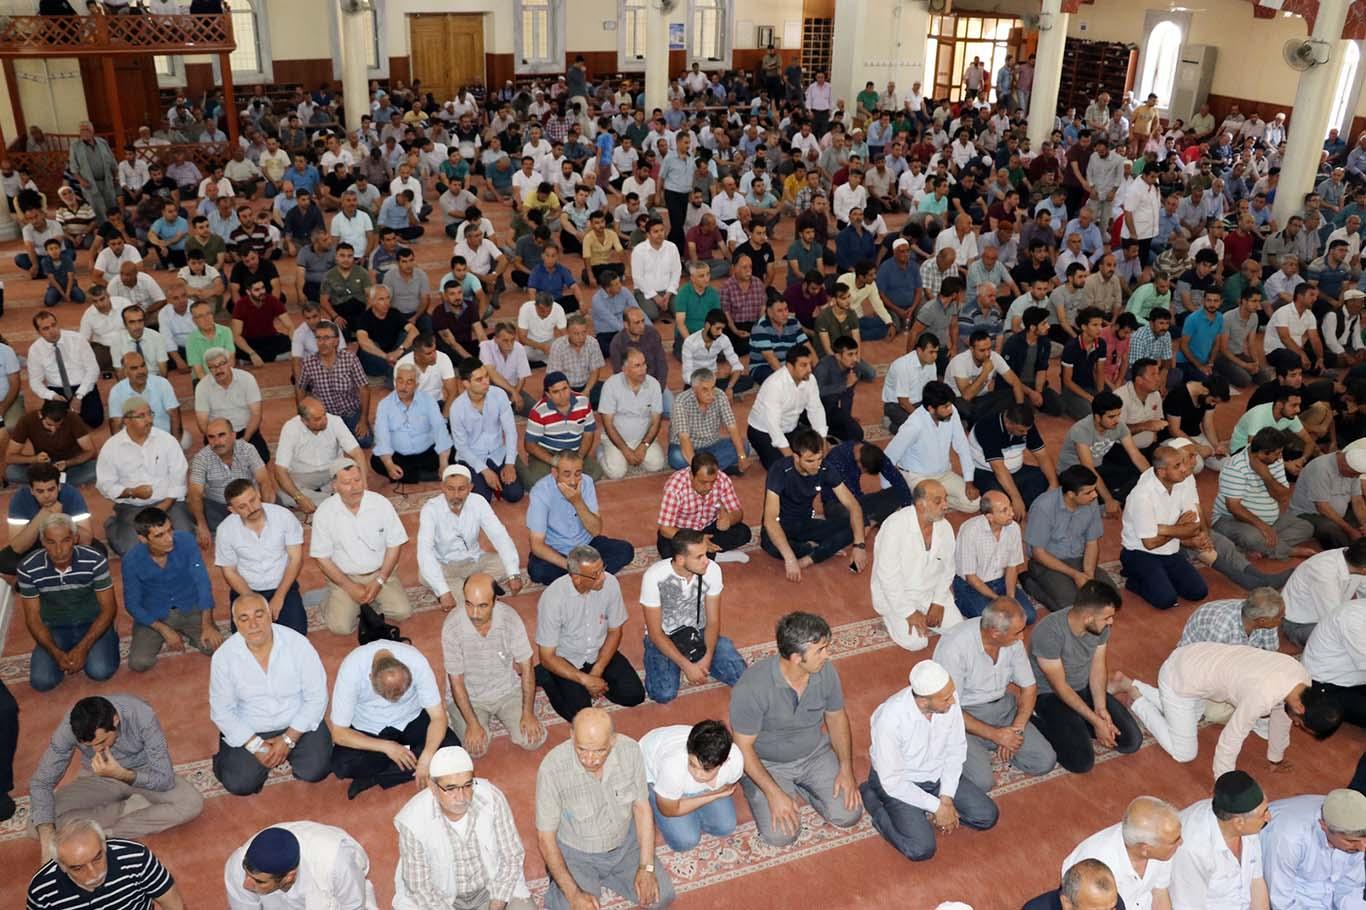 Gaziantep Ulu Camii’de 15 Temmuz şehitleri için mevlit okutuldu